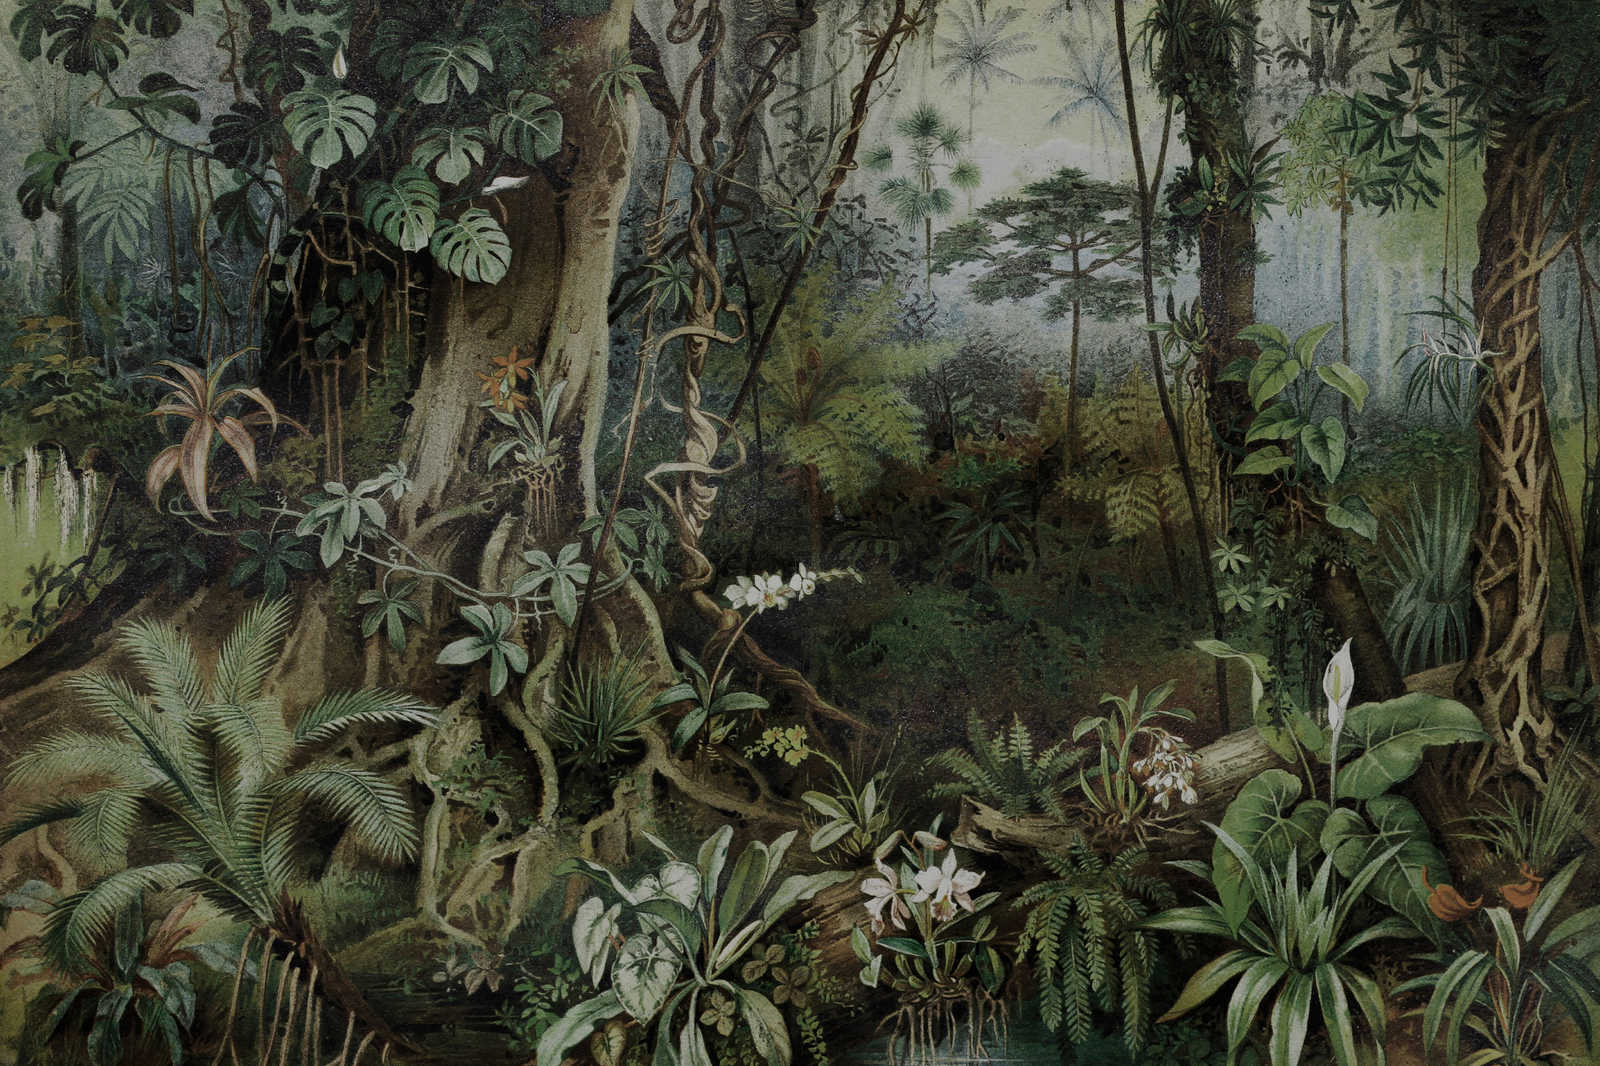             Jungle canvas schilderij in tekenstijl | muren door patel - 0,90 m x 0,60 m
        